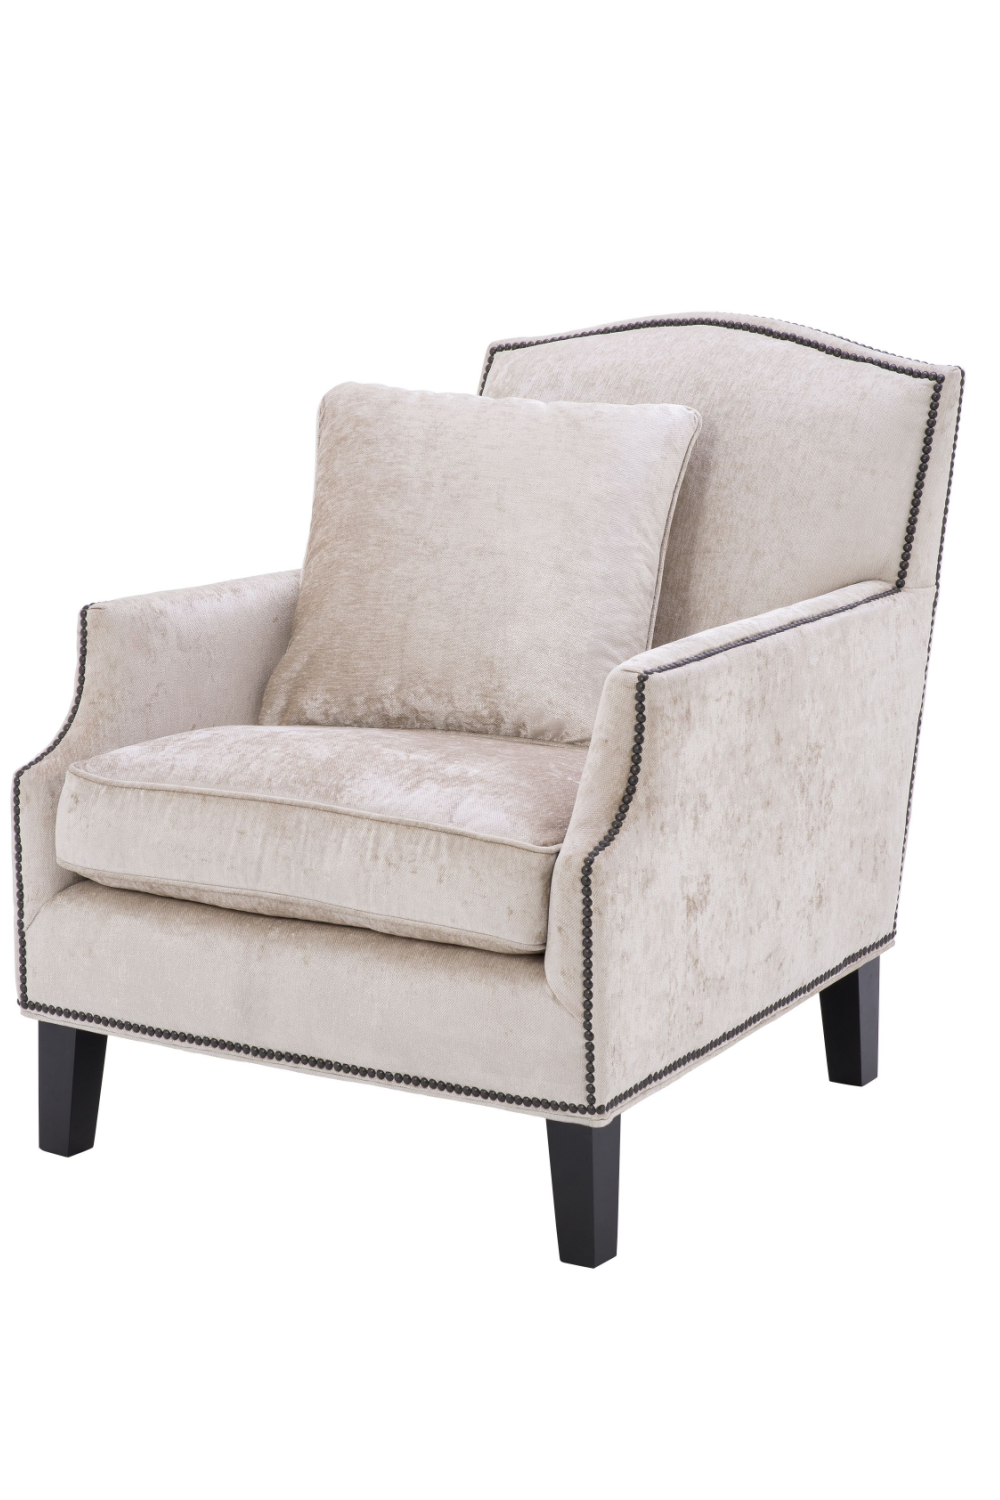 Off-White Slipper Chair | Eichholtz Merlin | Oroa.com